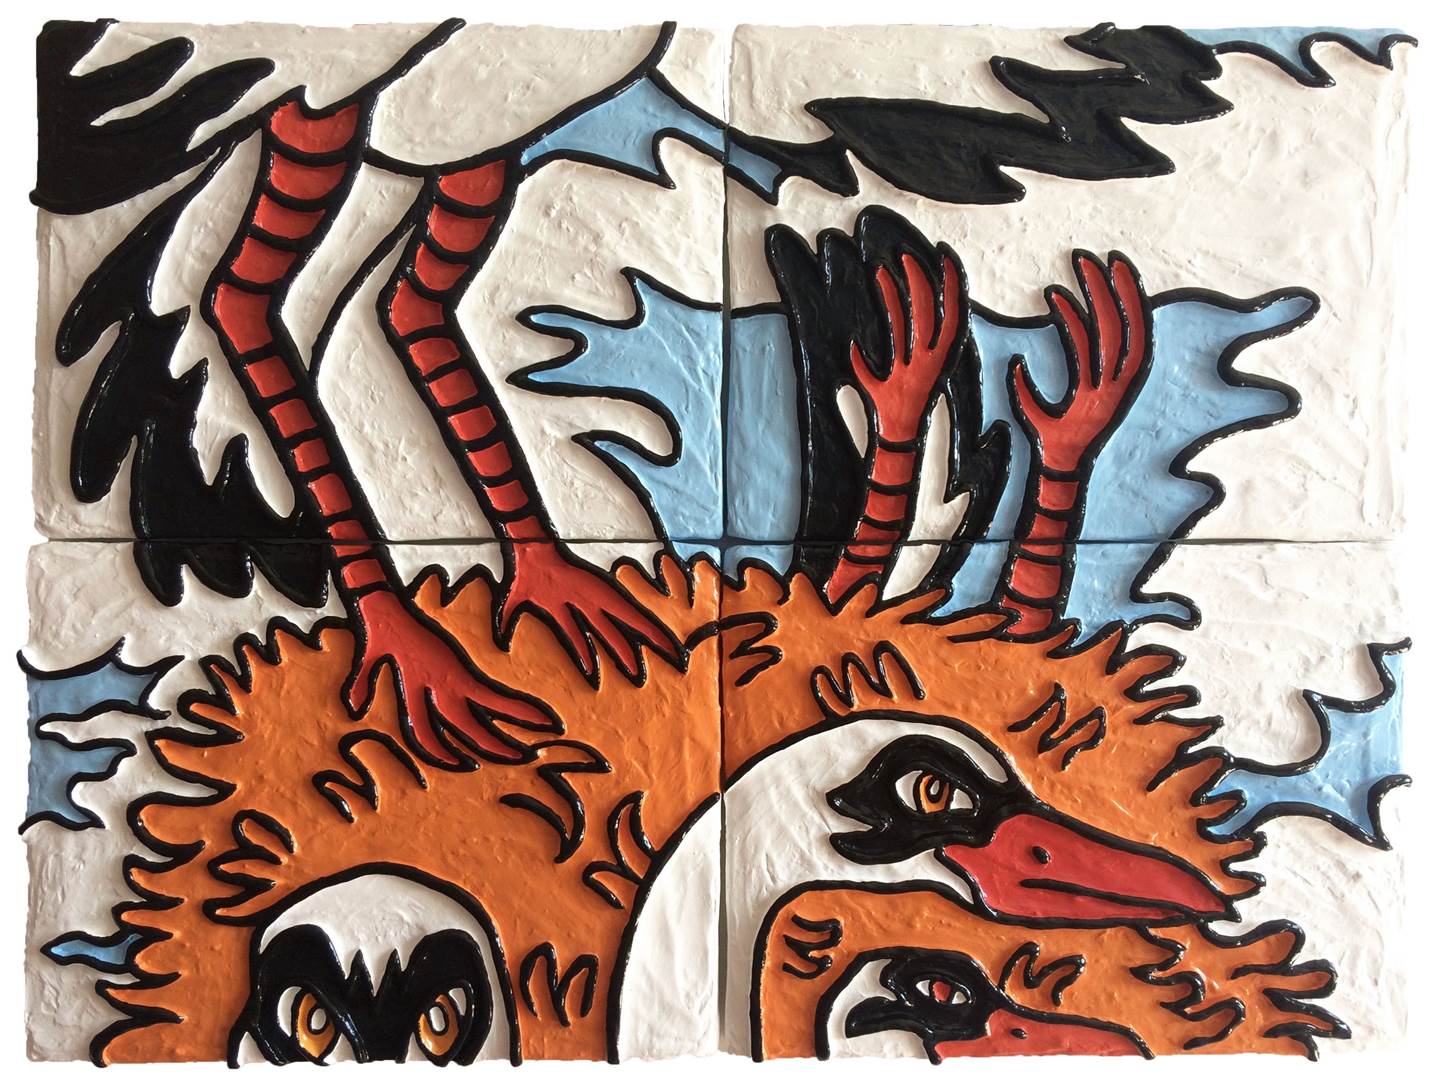 Vai lá para o teu ninho ver  filmezinhos japoneses!, original Animals Mixed Technique Painting by Hugo Castilho